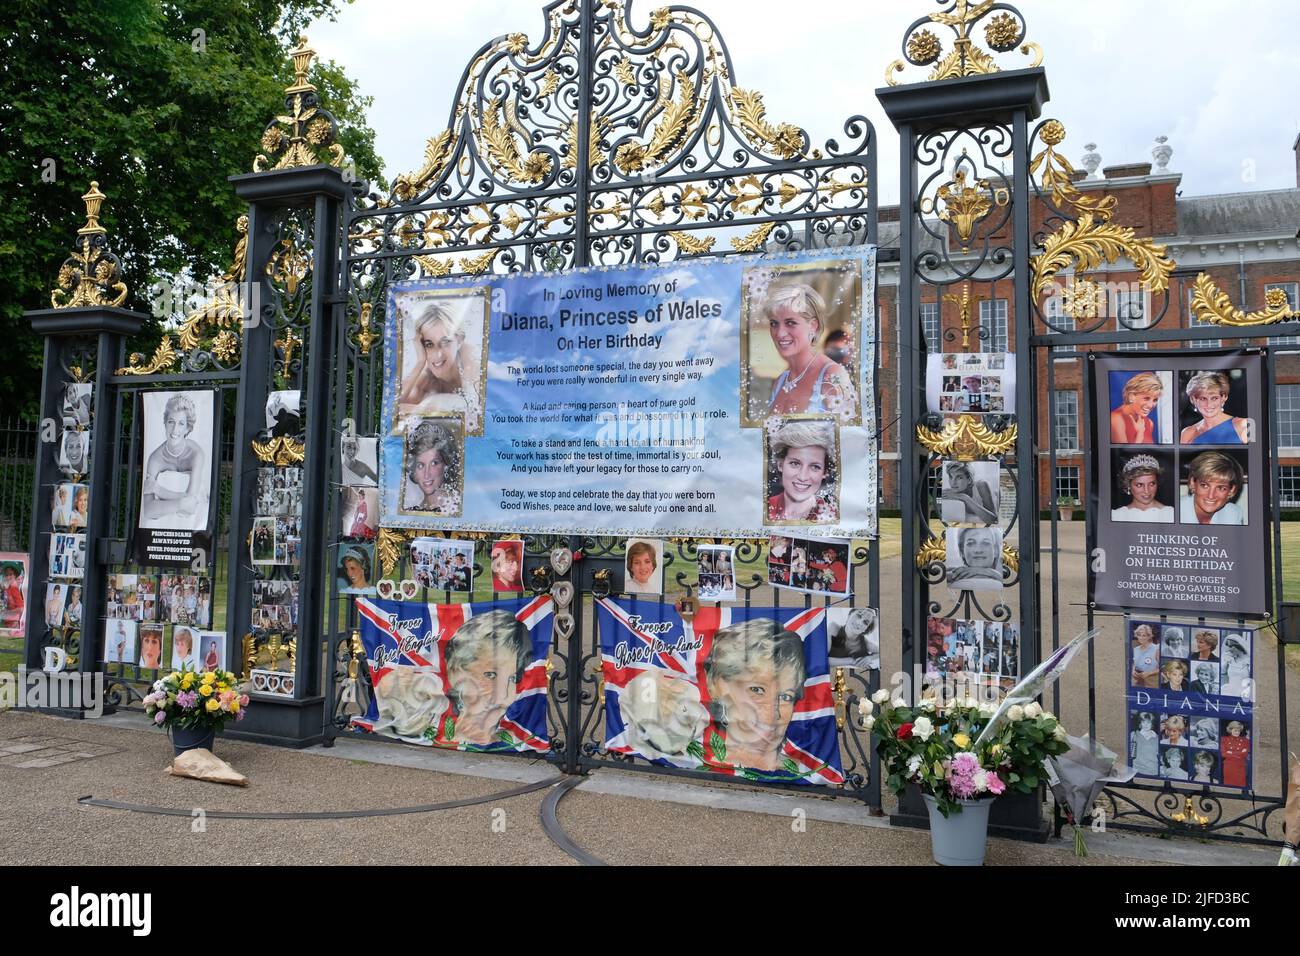 Londra, Regno Unito, 1st luglio 2022. I tifosi reali creano un omaggio annuale alla principessa Diana il suo compleanno, lasciando fiori, ornamenti e striscioni in suo onore alle porte della sua ex casa, Kensington Palace. Diana avrebbe girato 61 quest'anno. Credit: Undicesima ora Fotografia/Alamy Live News Foto Stock